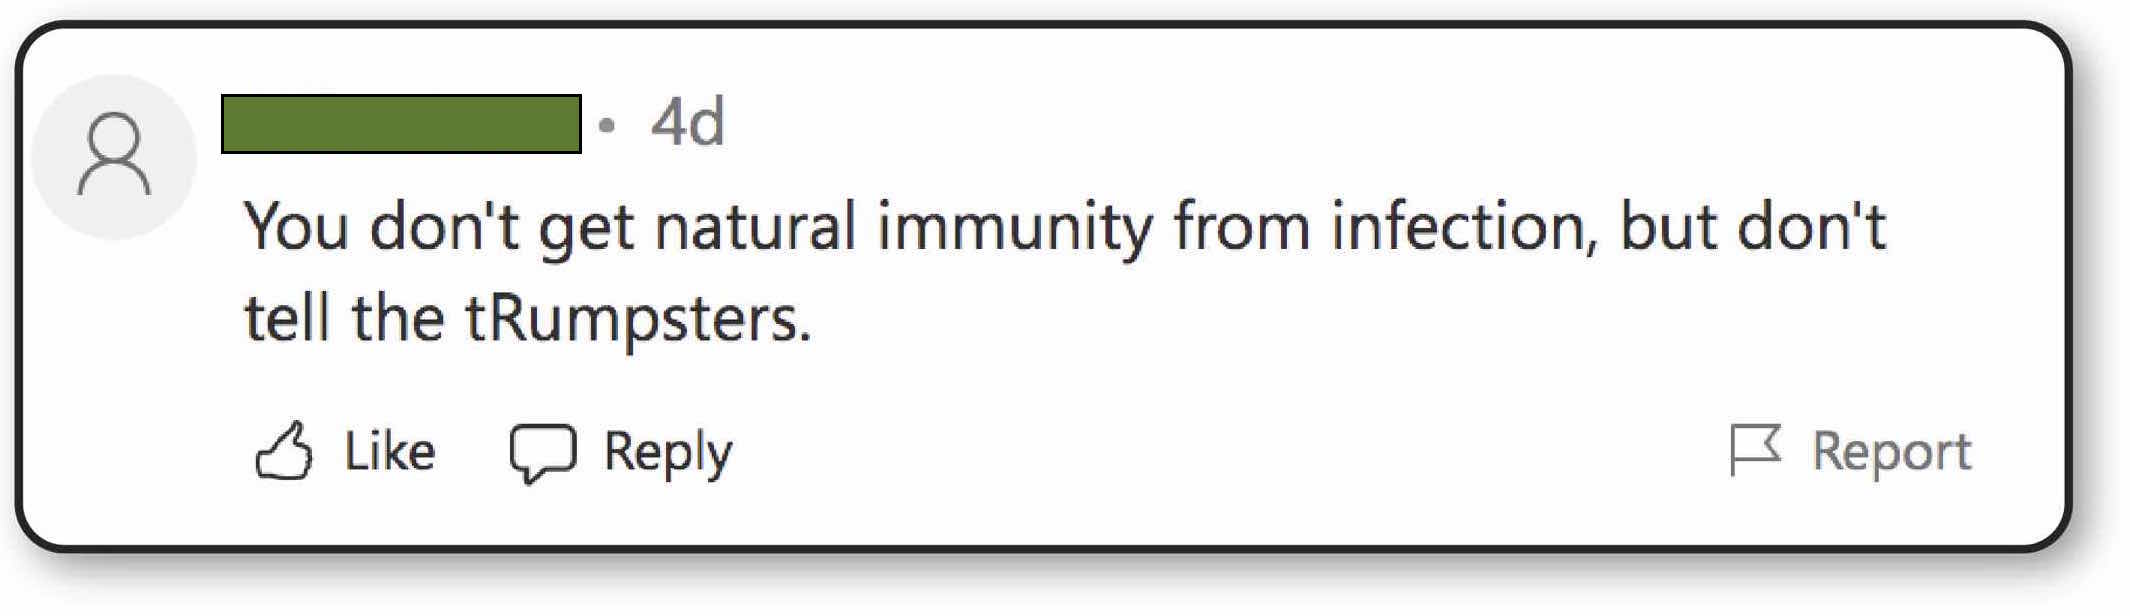 no-immunity bowdlerized